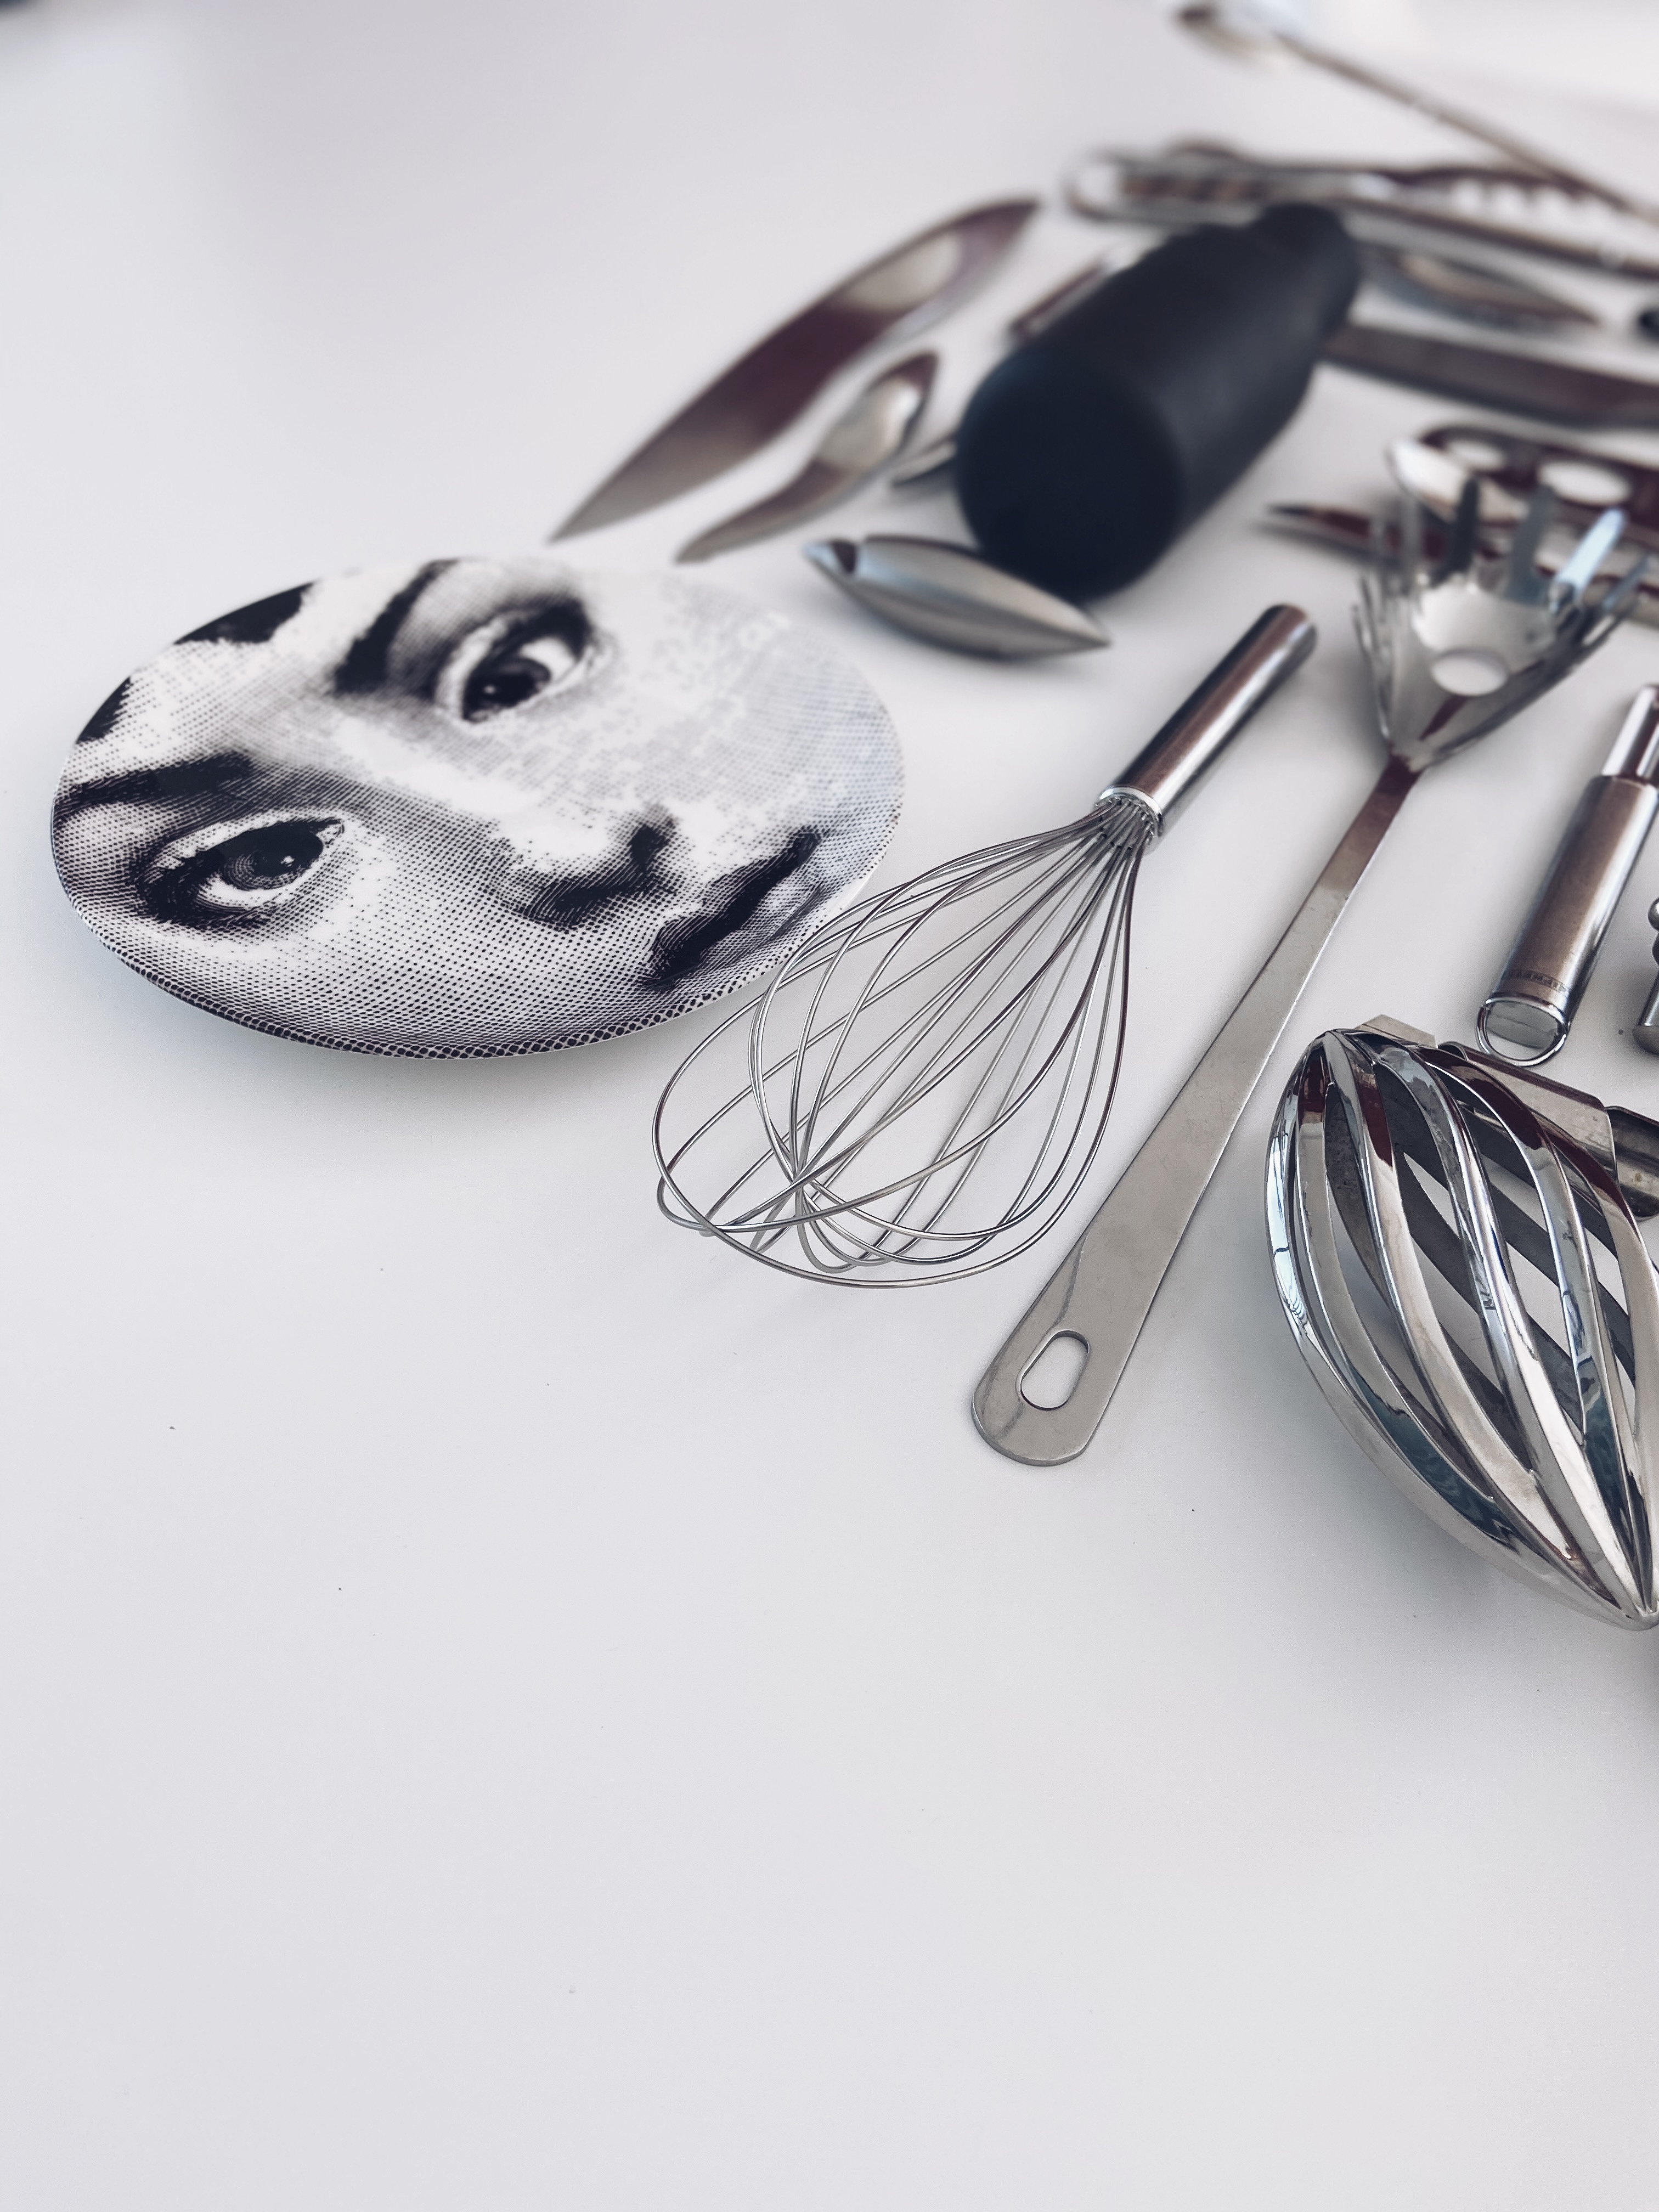 Küchen essentials Dinge Wesentliches Musthaves Messer